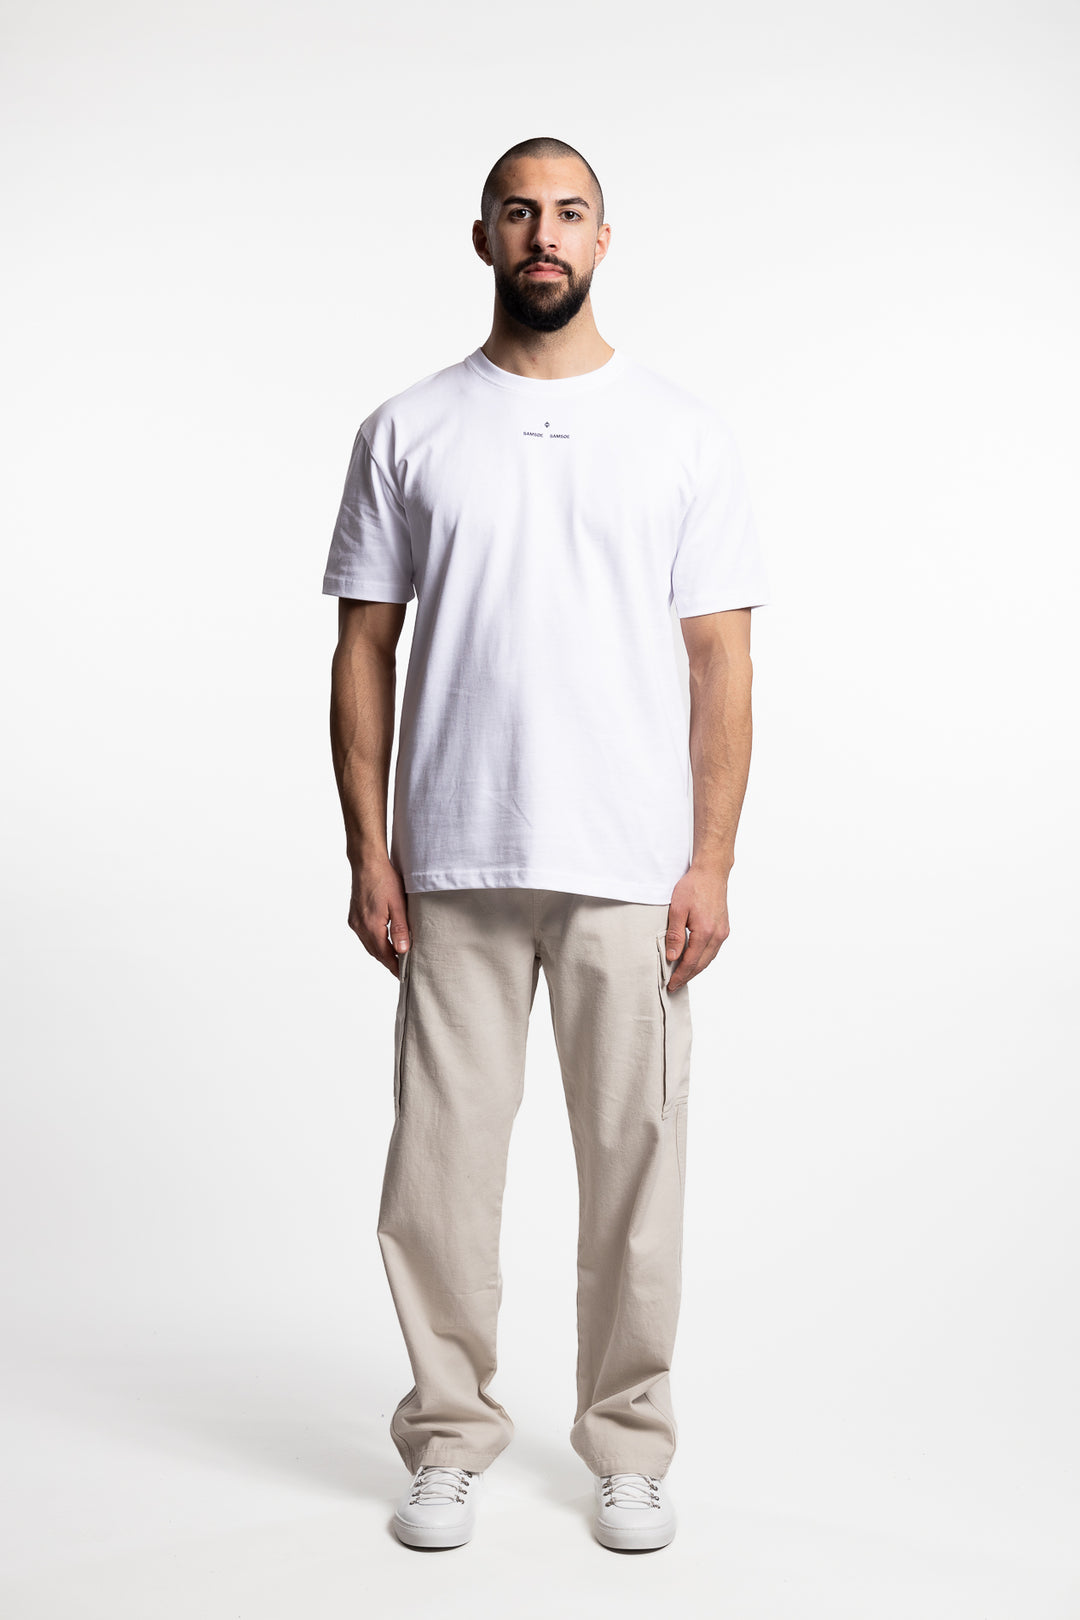 Sasouth T-Shirt White